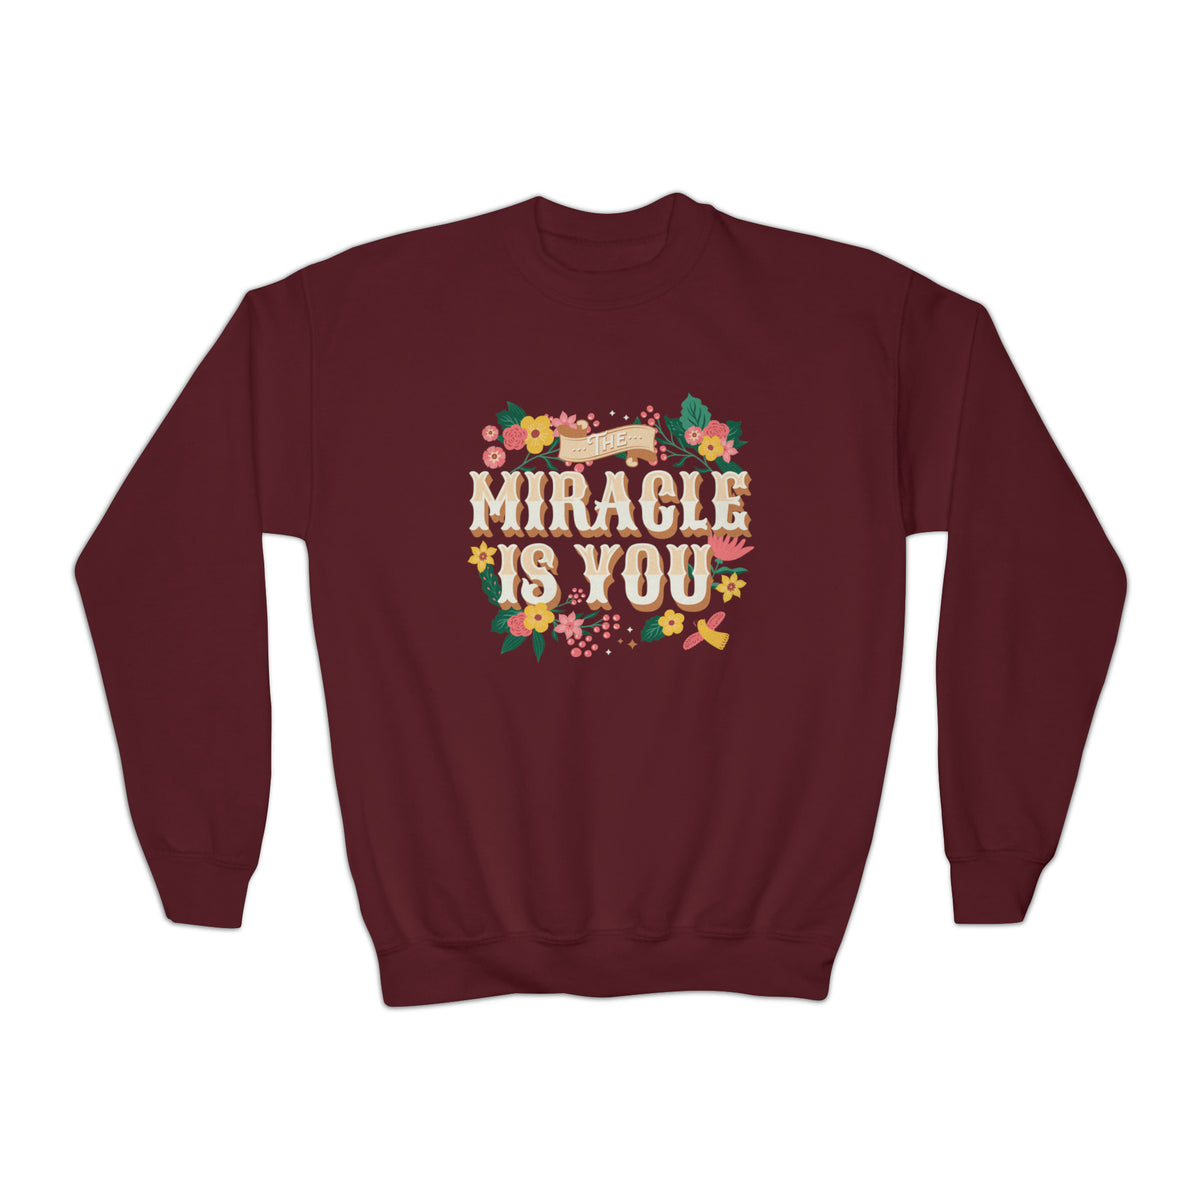 The Miracle Is You Gildan Youth Crewneck Sweatshirt